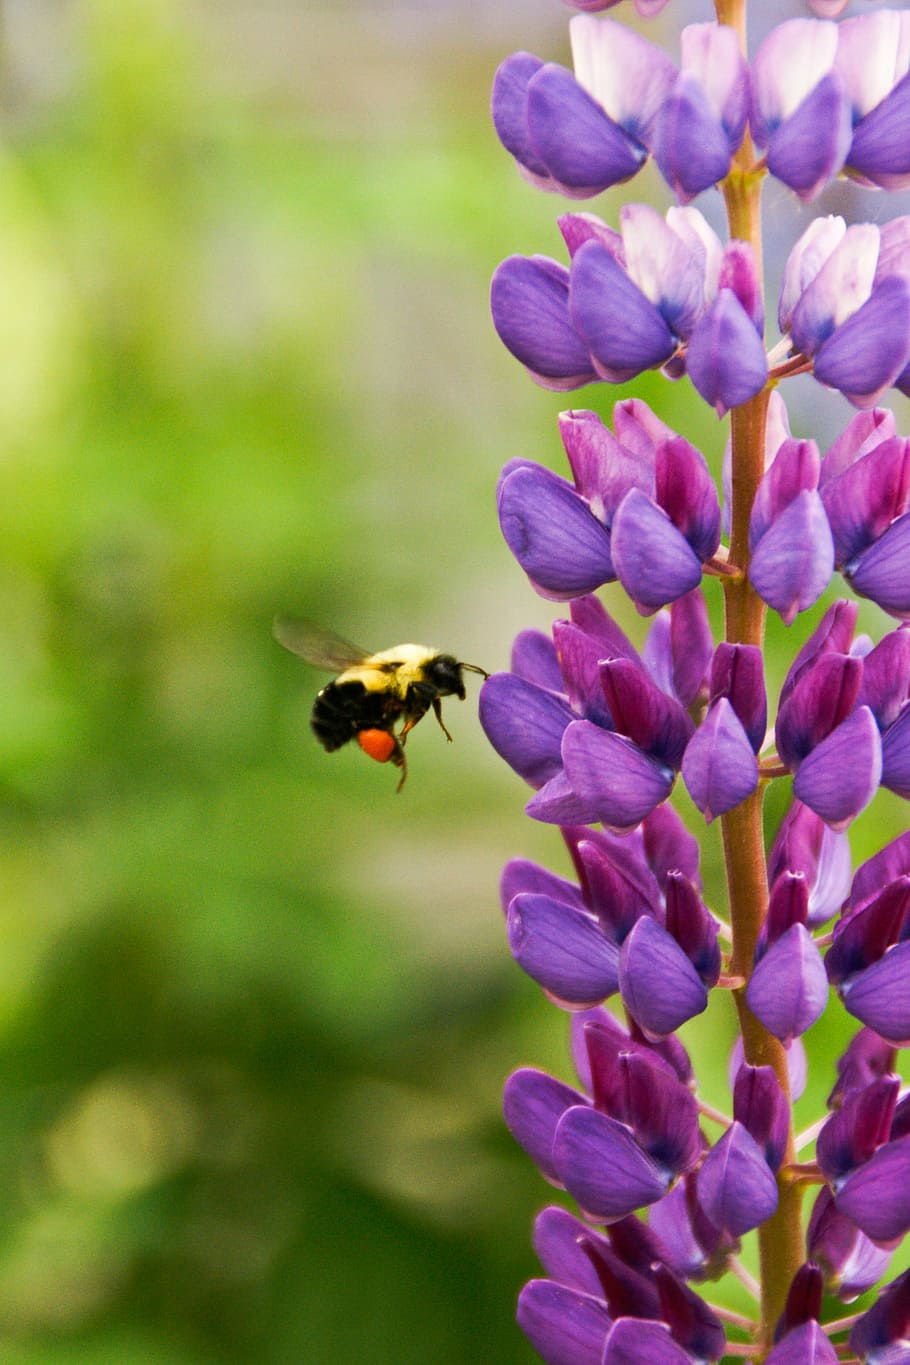 selectivo, fotografía de enfoque, amarillo, abeja, flotando, frente, púrpura, flor de pétalos, pétalo, flor